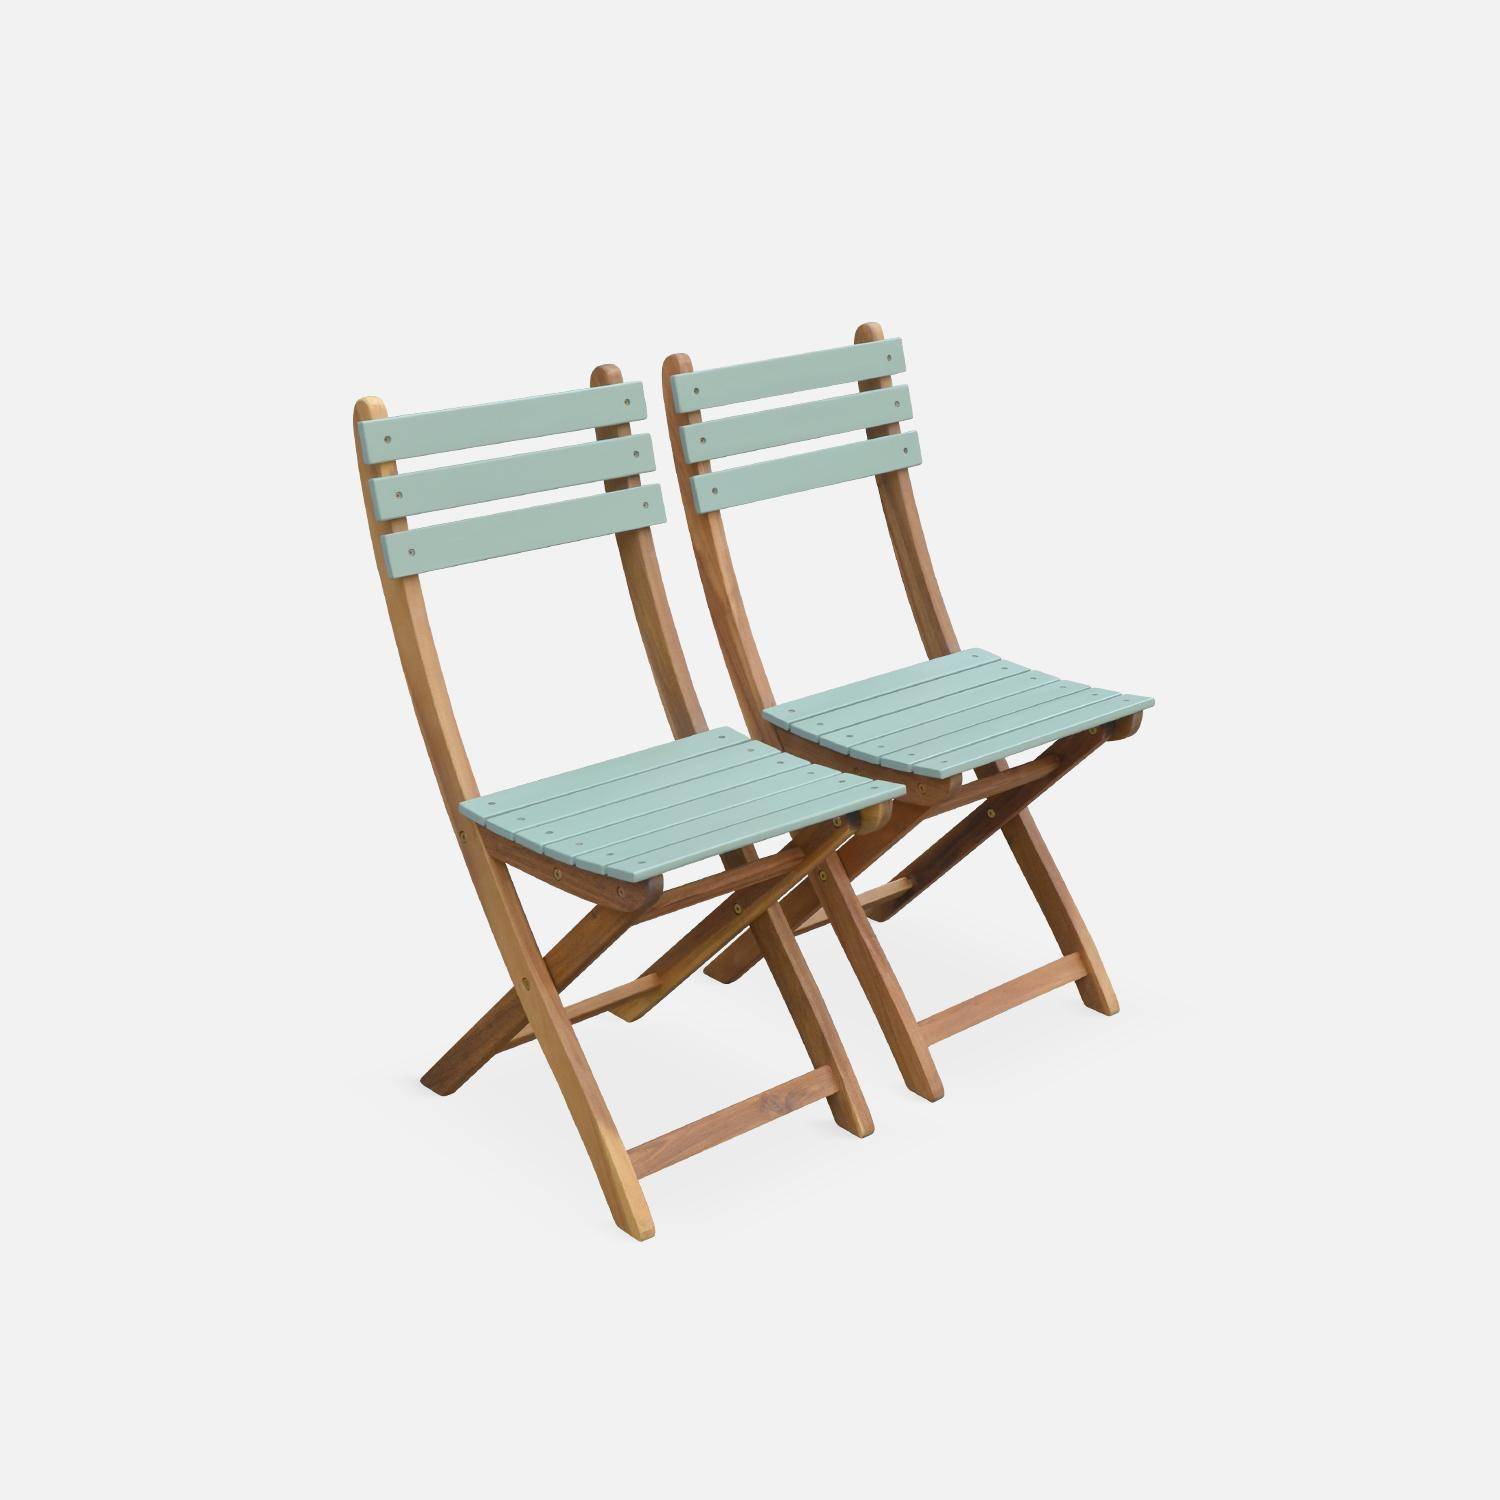 Conjunto de jardín de madera Bistro 60x60cm - Barcelona - verde grisáceo, mesa plegable bicolor con 2 sillas plegables, acacia Photo5